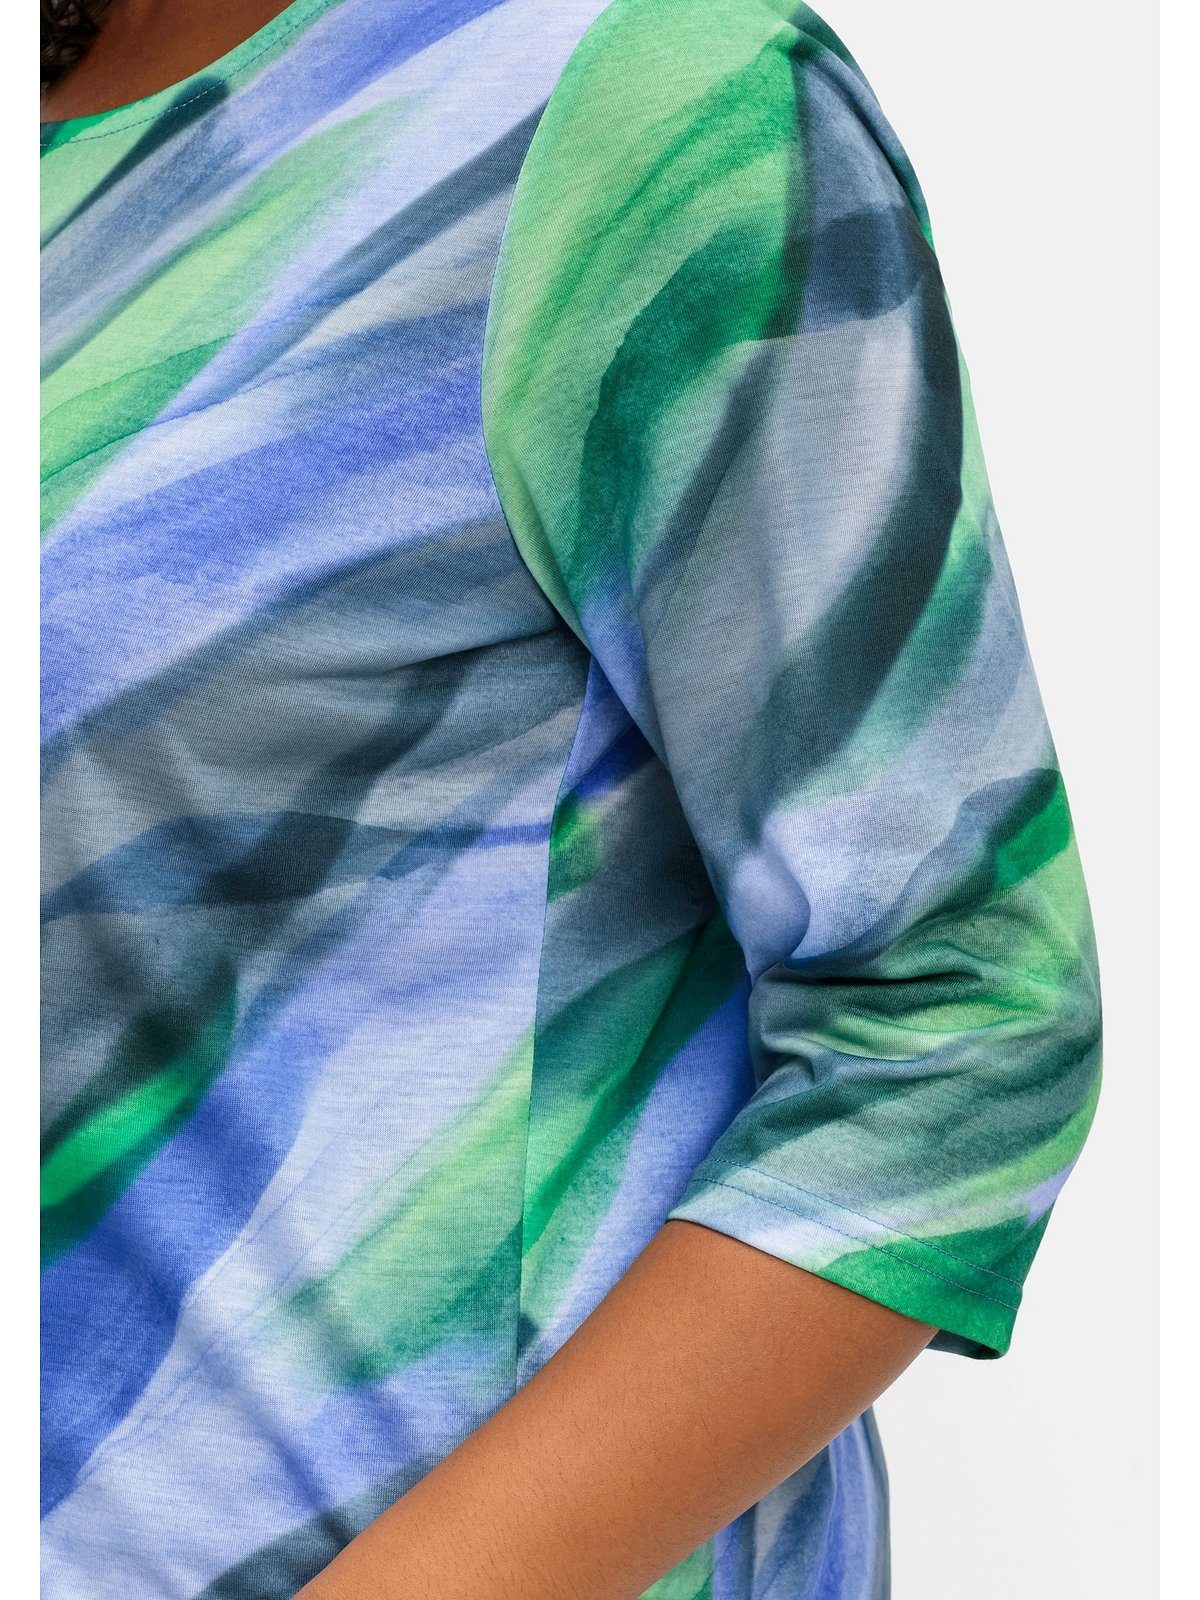 Optik bedruckt Sheego Große Größen in Alloverdruck royalblau-grasgrün 3/4-Arm-Shirt mit gebatikter